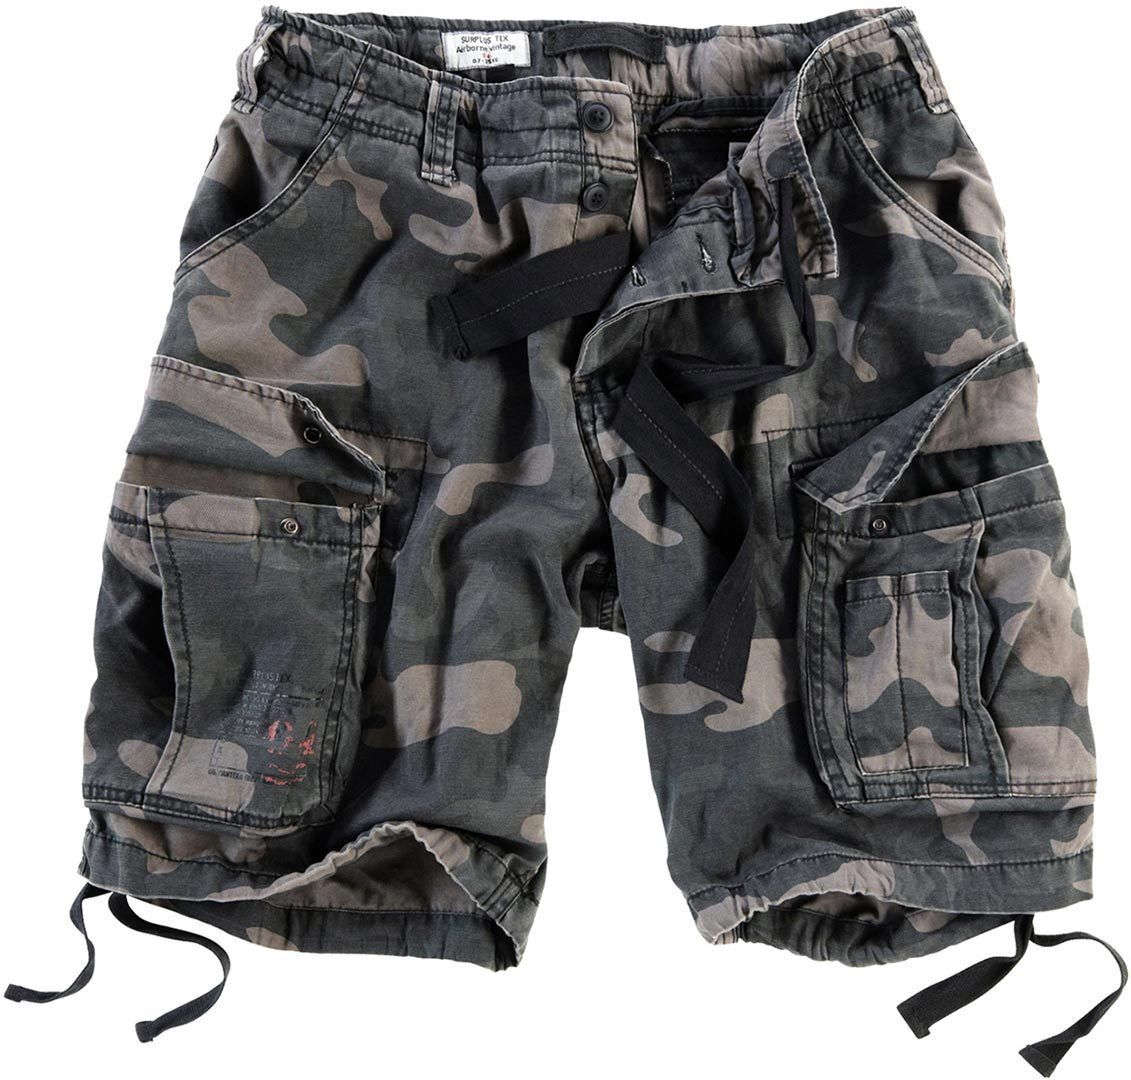 Surplus Airborne Vintage Pantalones cortos - Negro (L)